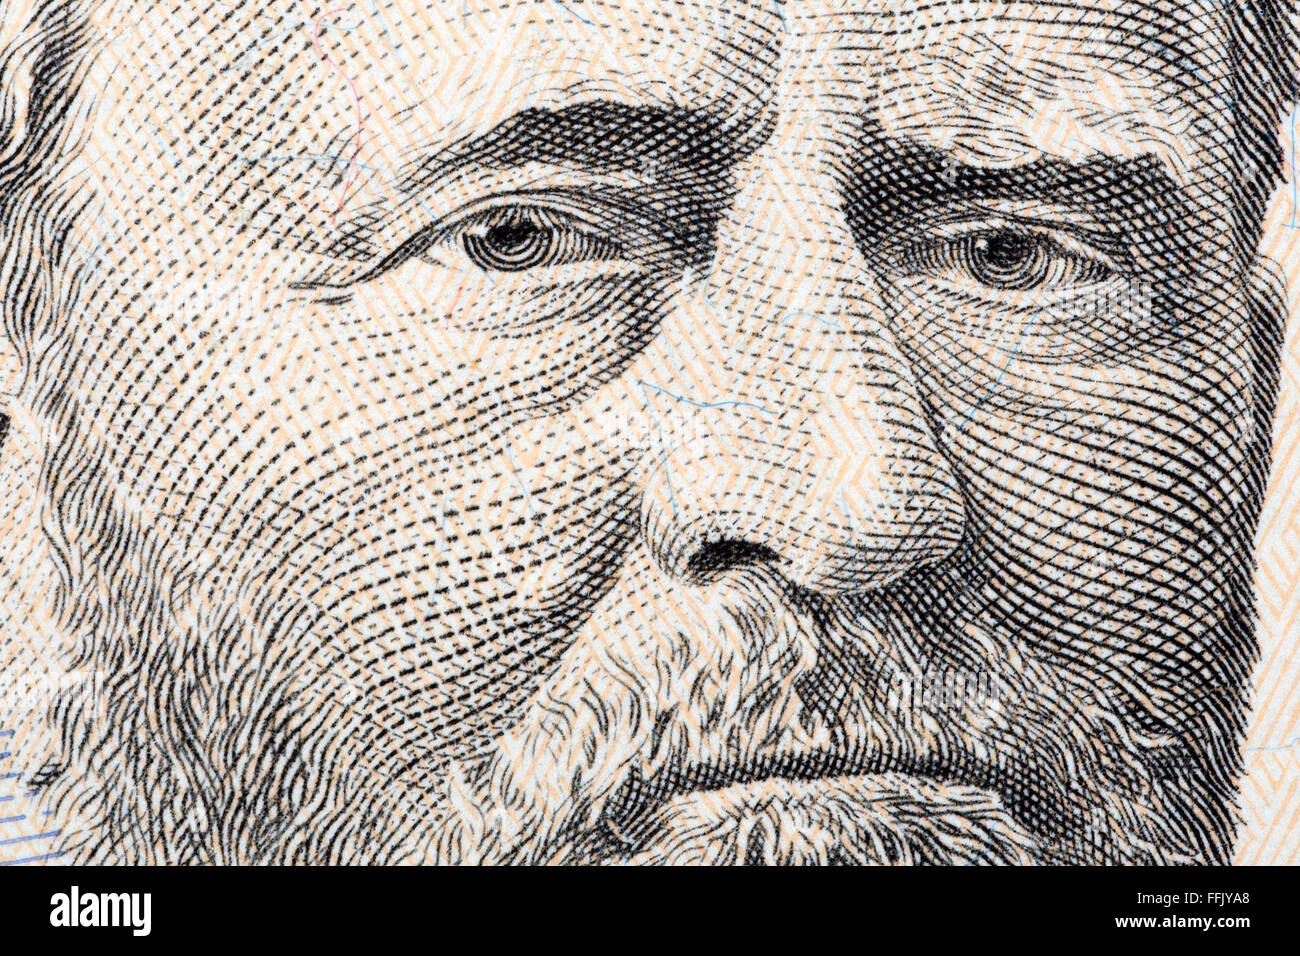 Ulysses Grant un retrato de cerca de cincuenta dólares estadounidenses Foto de stock